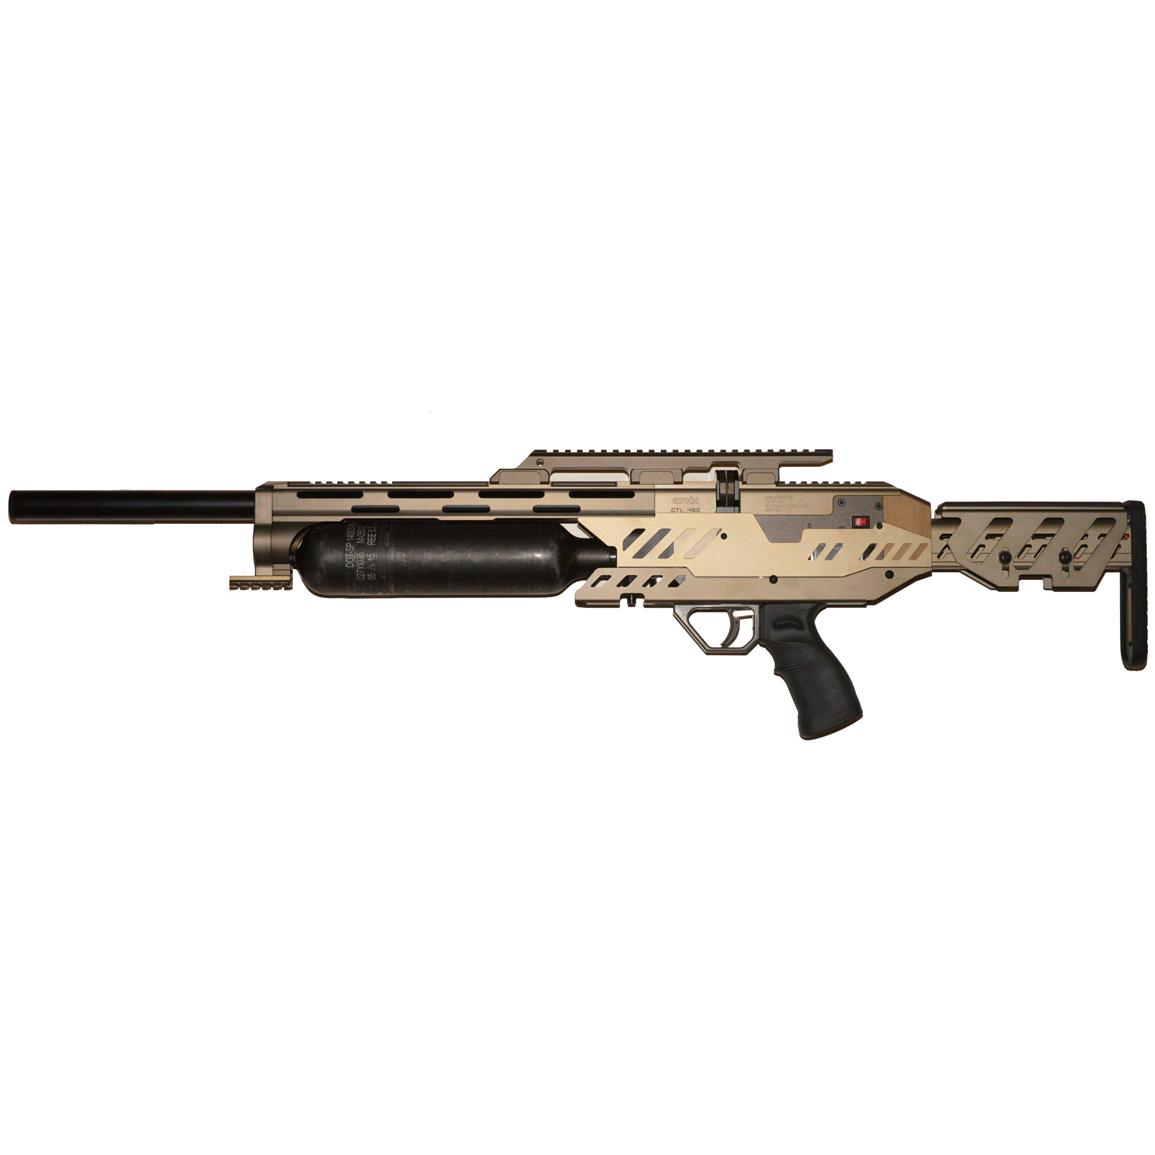 Evanix GTL 480, 9mm, PCP Air Rifle - 672690, Air & BB ...